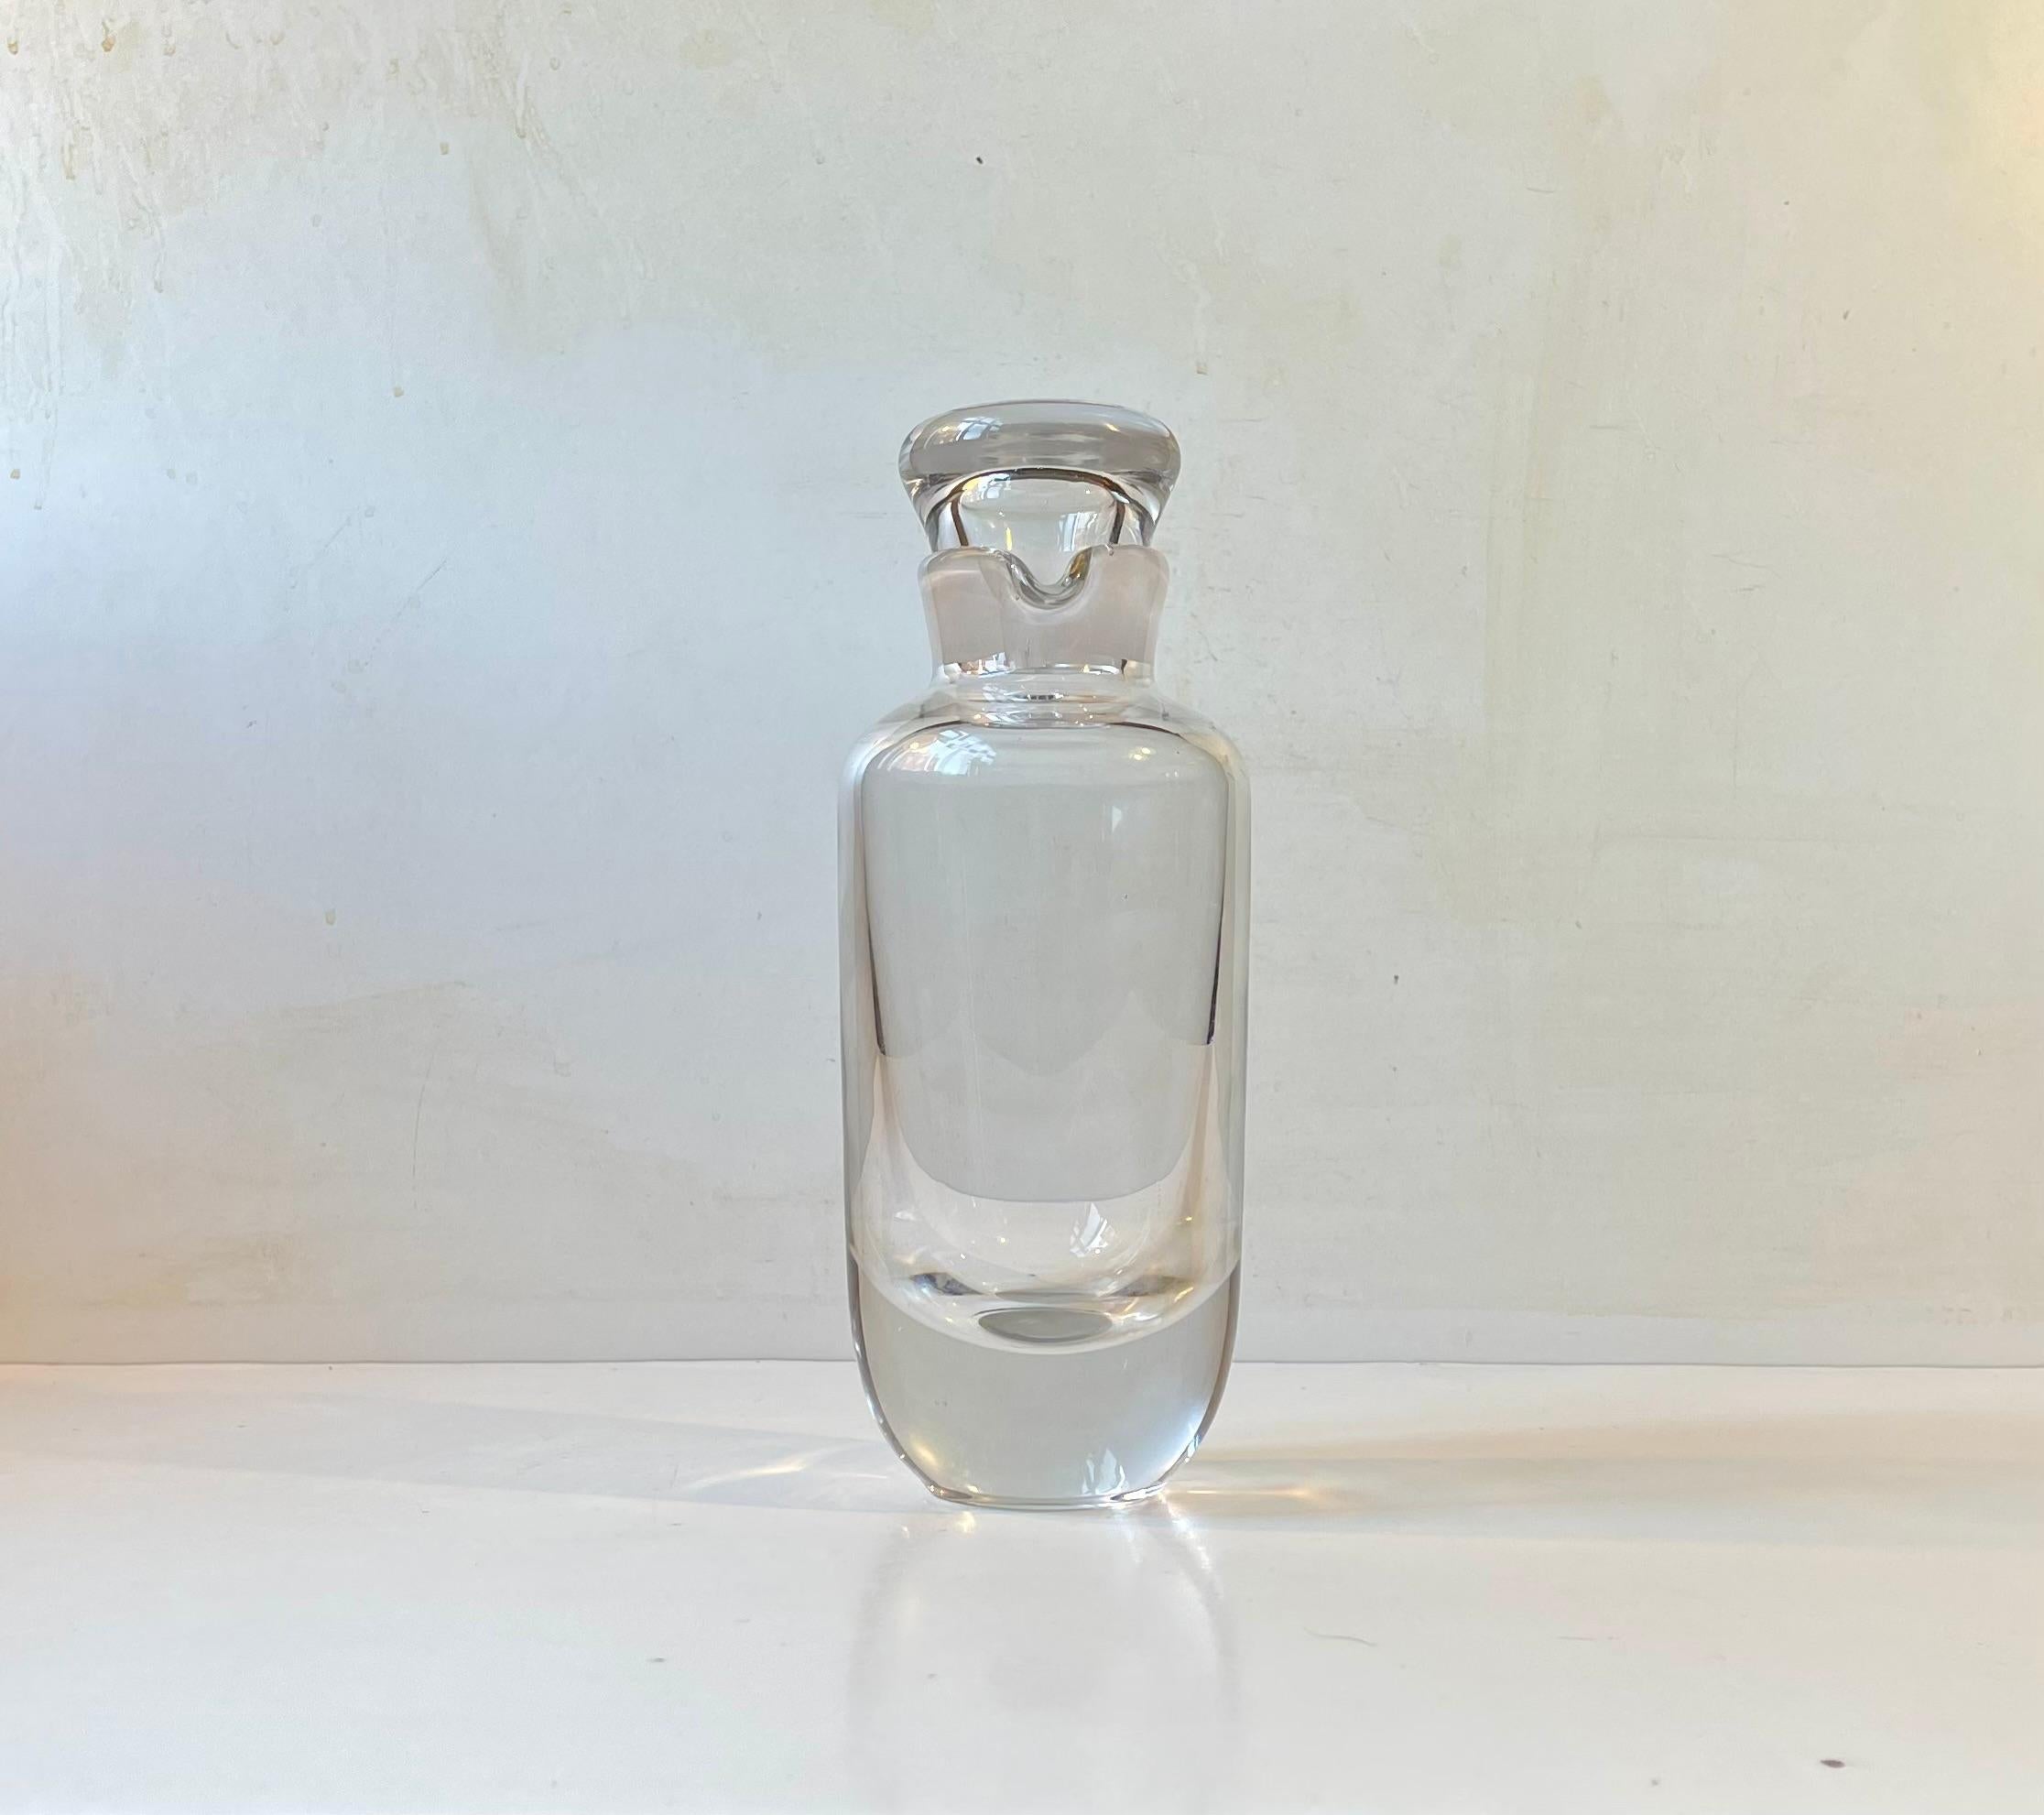 Stilvoller Dekanter/Cocktailshaker aus dickem, klarem Kristallglas. Wahrscheinlich in den 1970er Jahren von Orrefors in Schweden nach einem Entwurf von Vicke Lindstrand hergestellt. Ununterscheidbar bis zur Basis signiert. Sehr gepflegter und